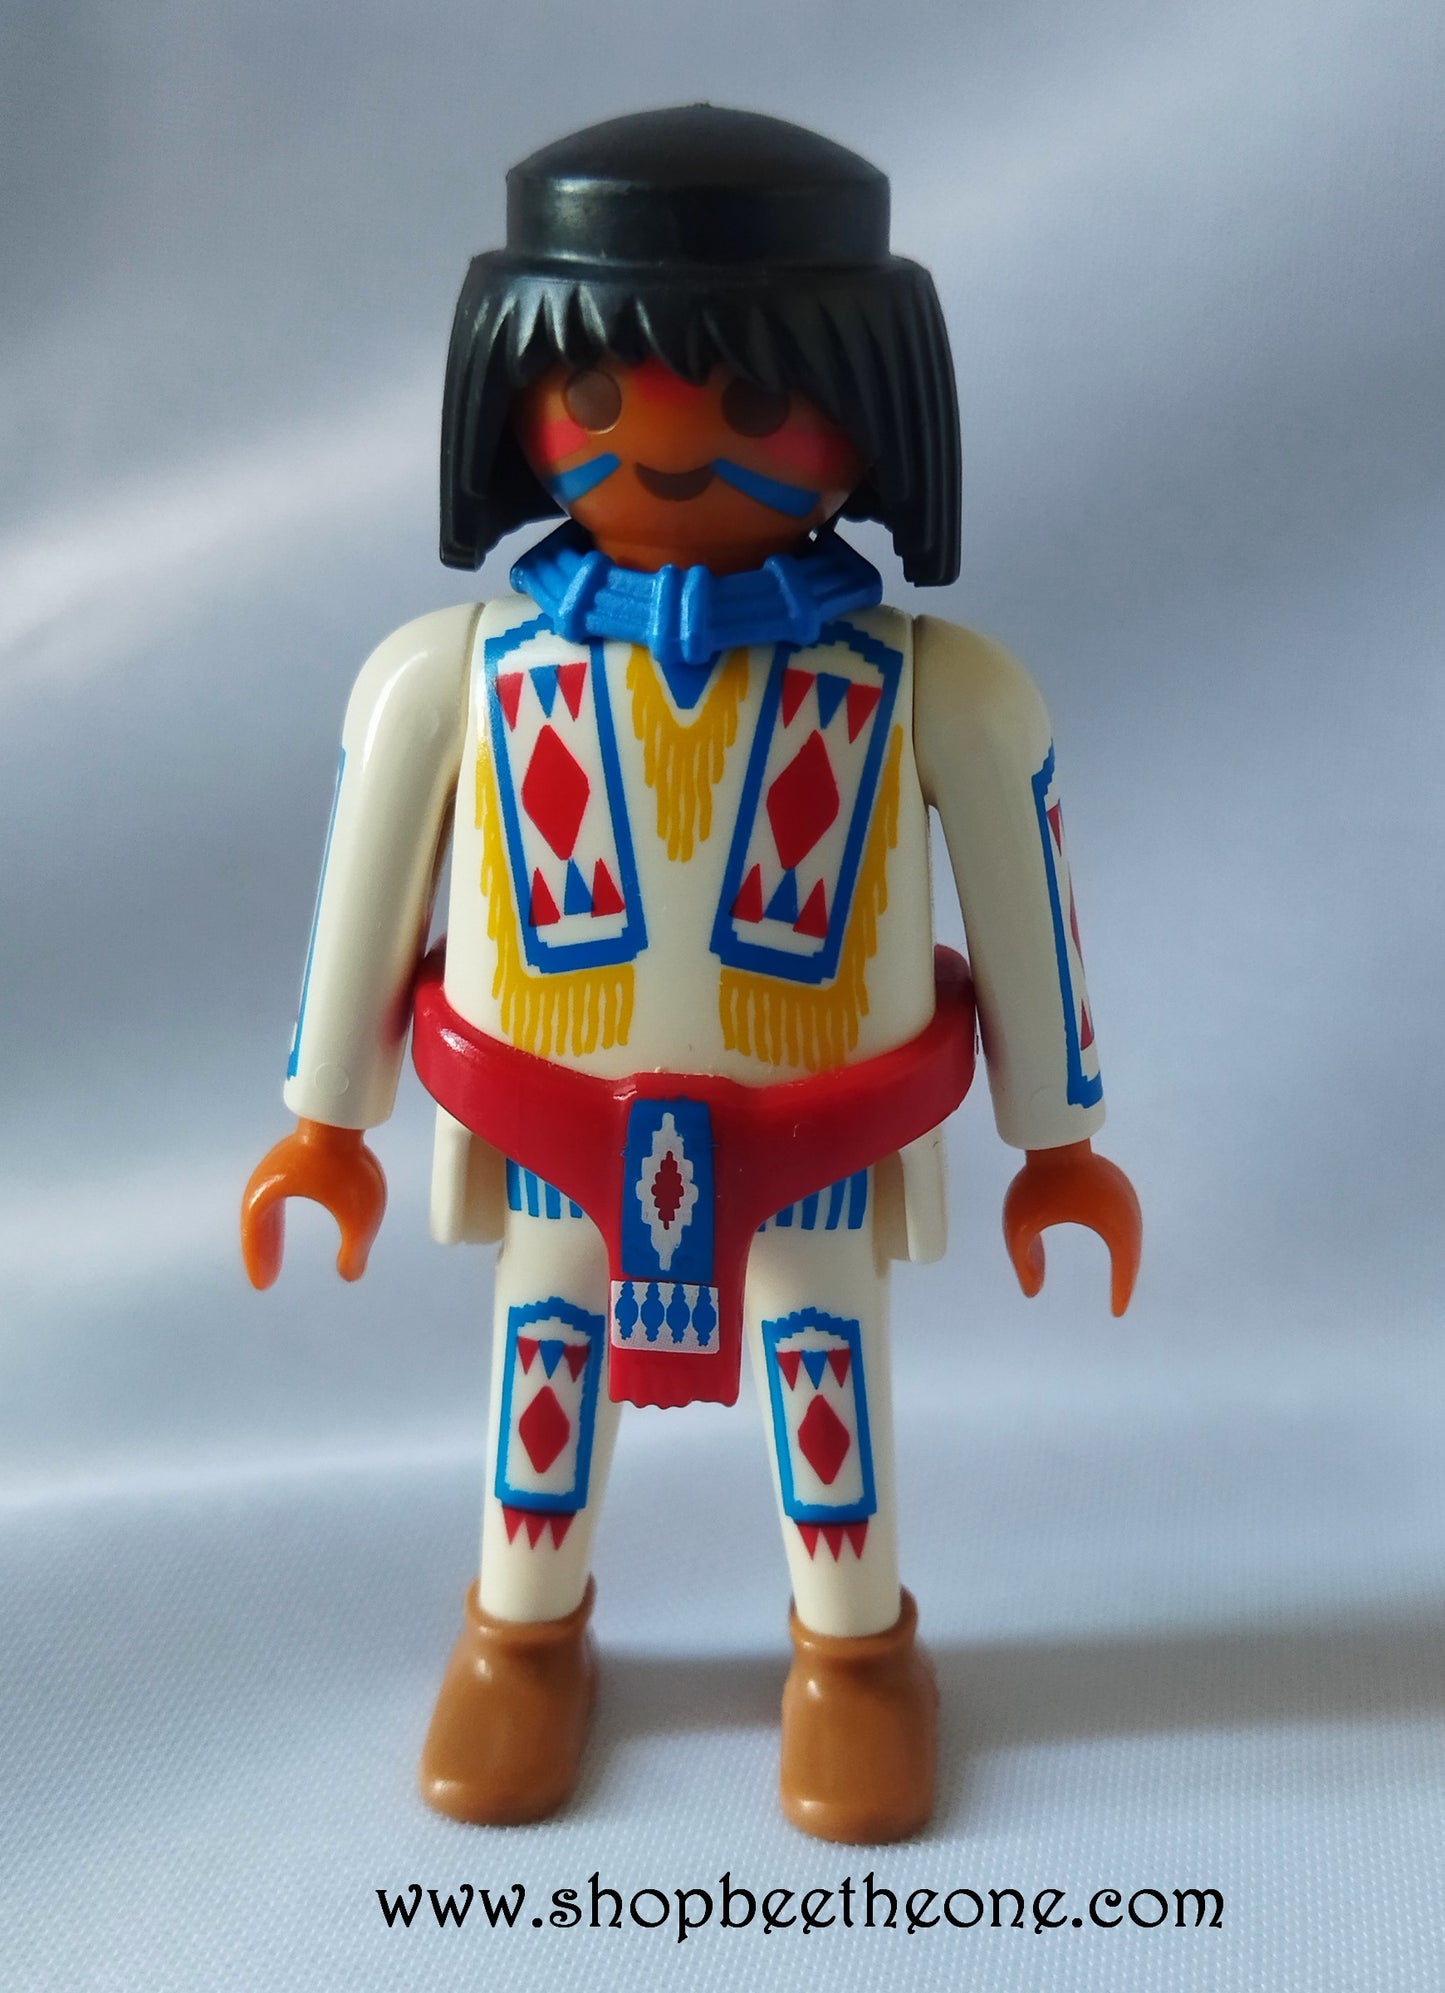 Chef de tribu autochtone 70062 - Playmobil 2019 - Figurine Klicky Chef Indien